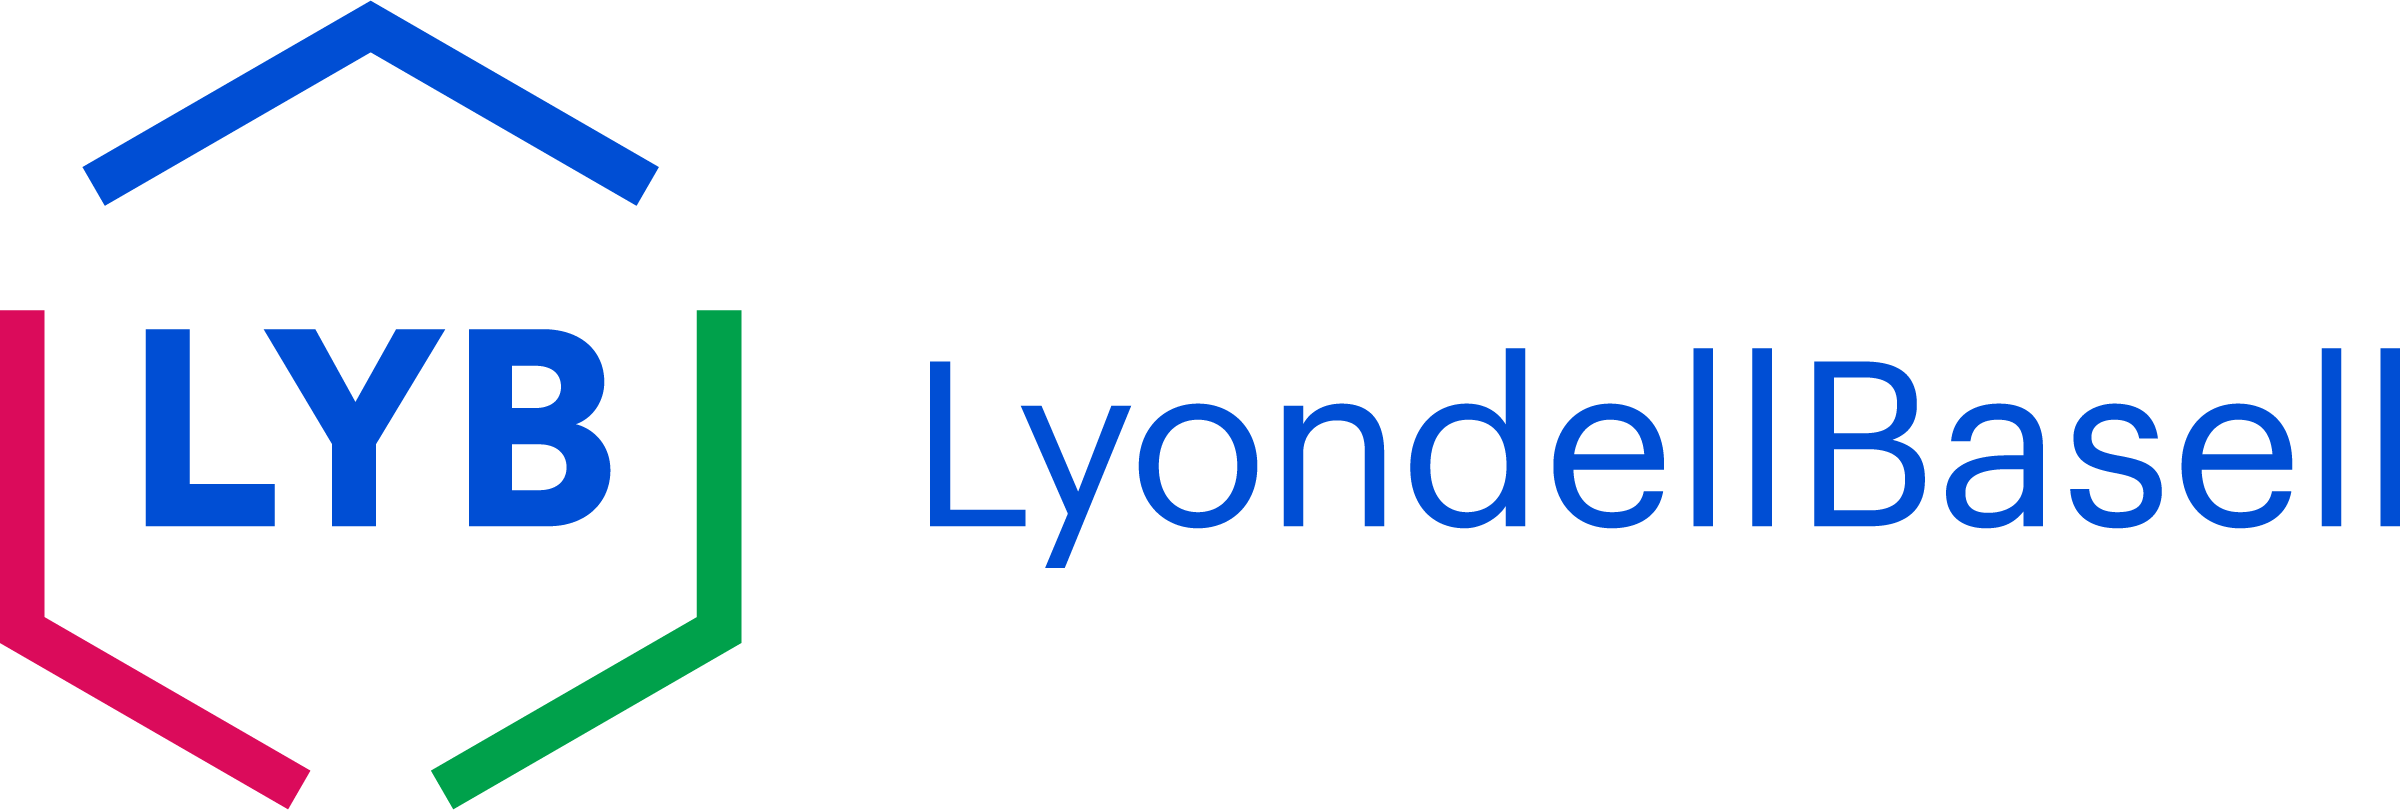 lyb-logo.png